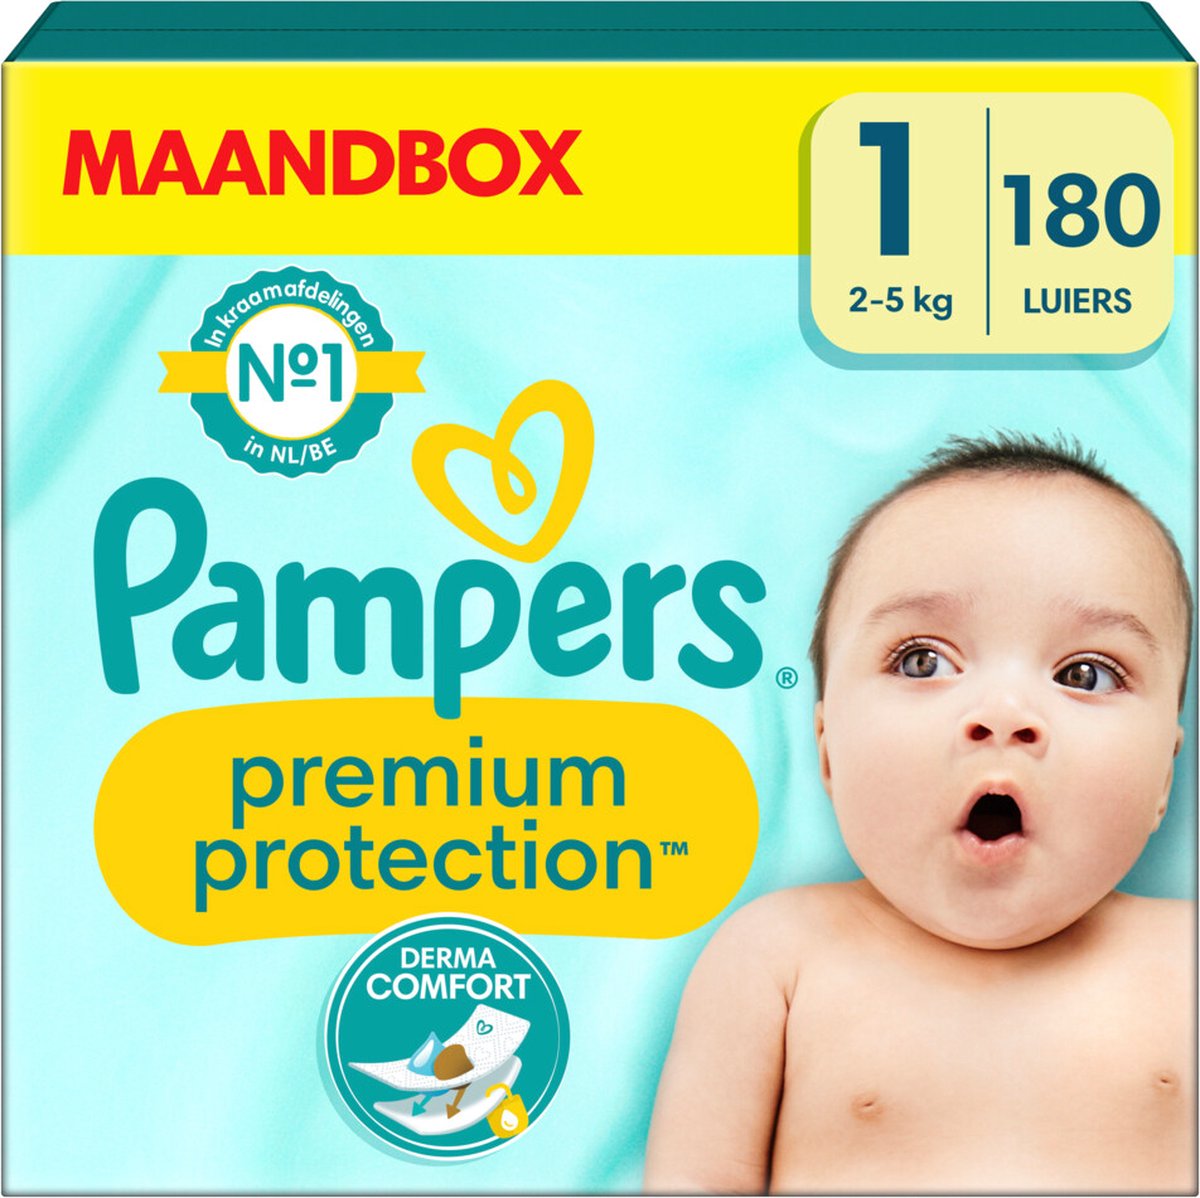 Pampers Premium Protection - Maat 1 (2kg 5kg) - 180 Luiers - Maandbox | bol.com